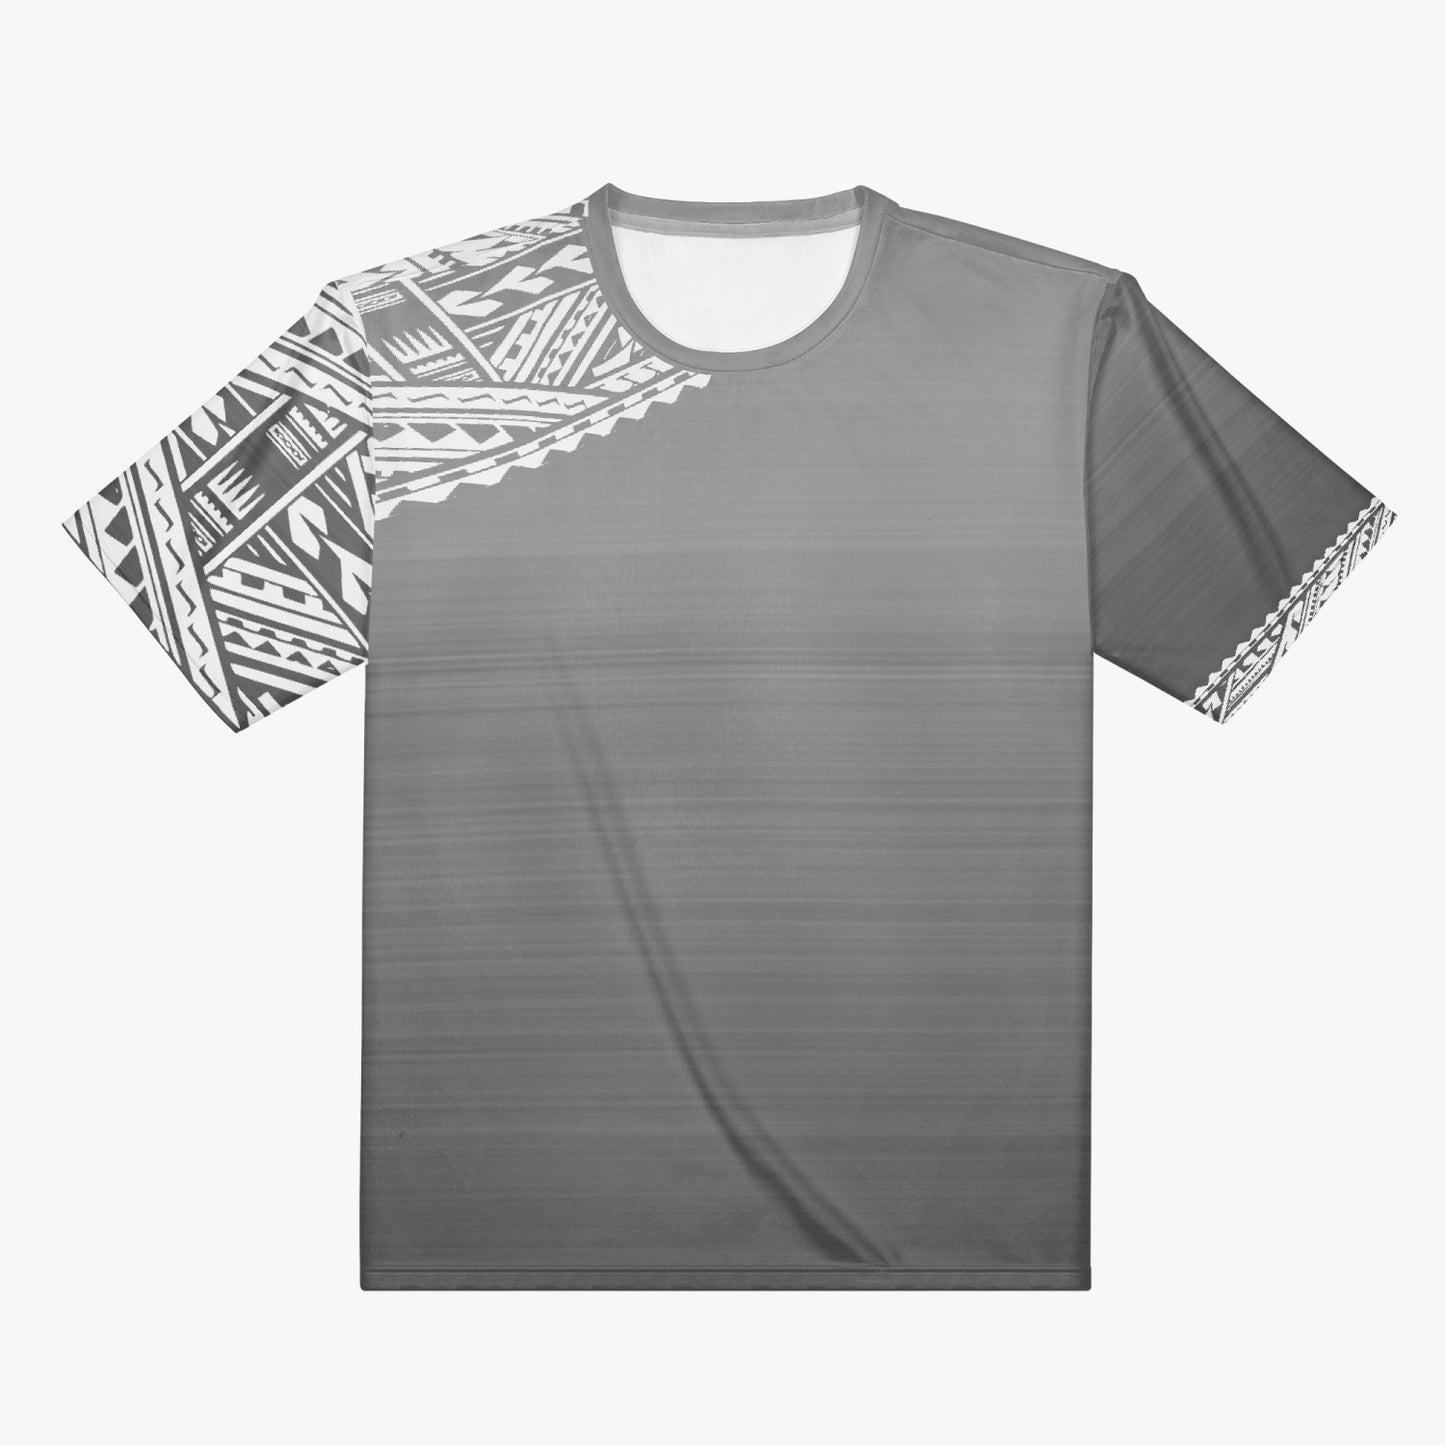 Tatau - T-shirt